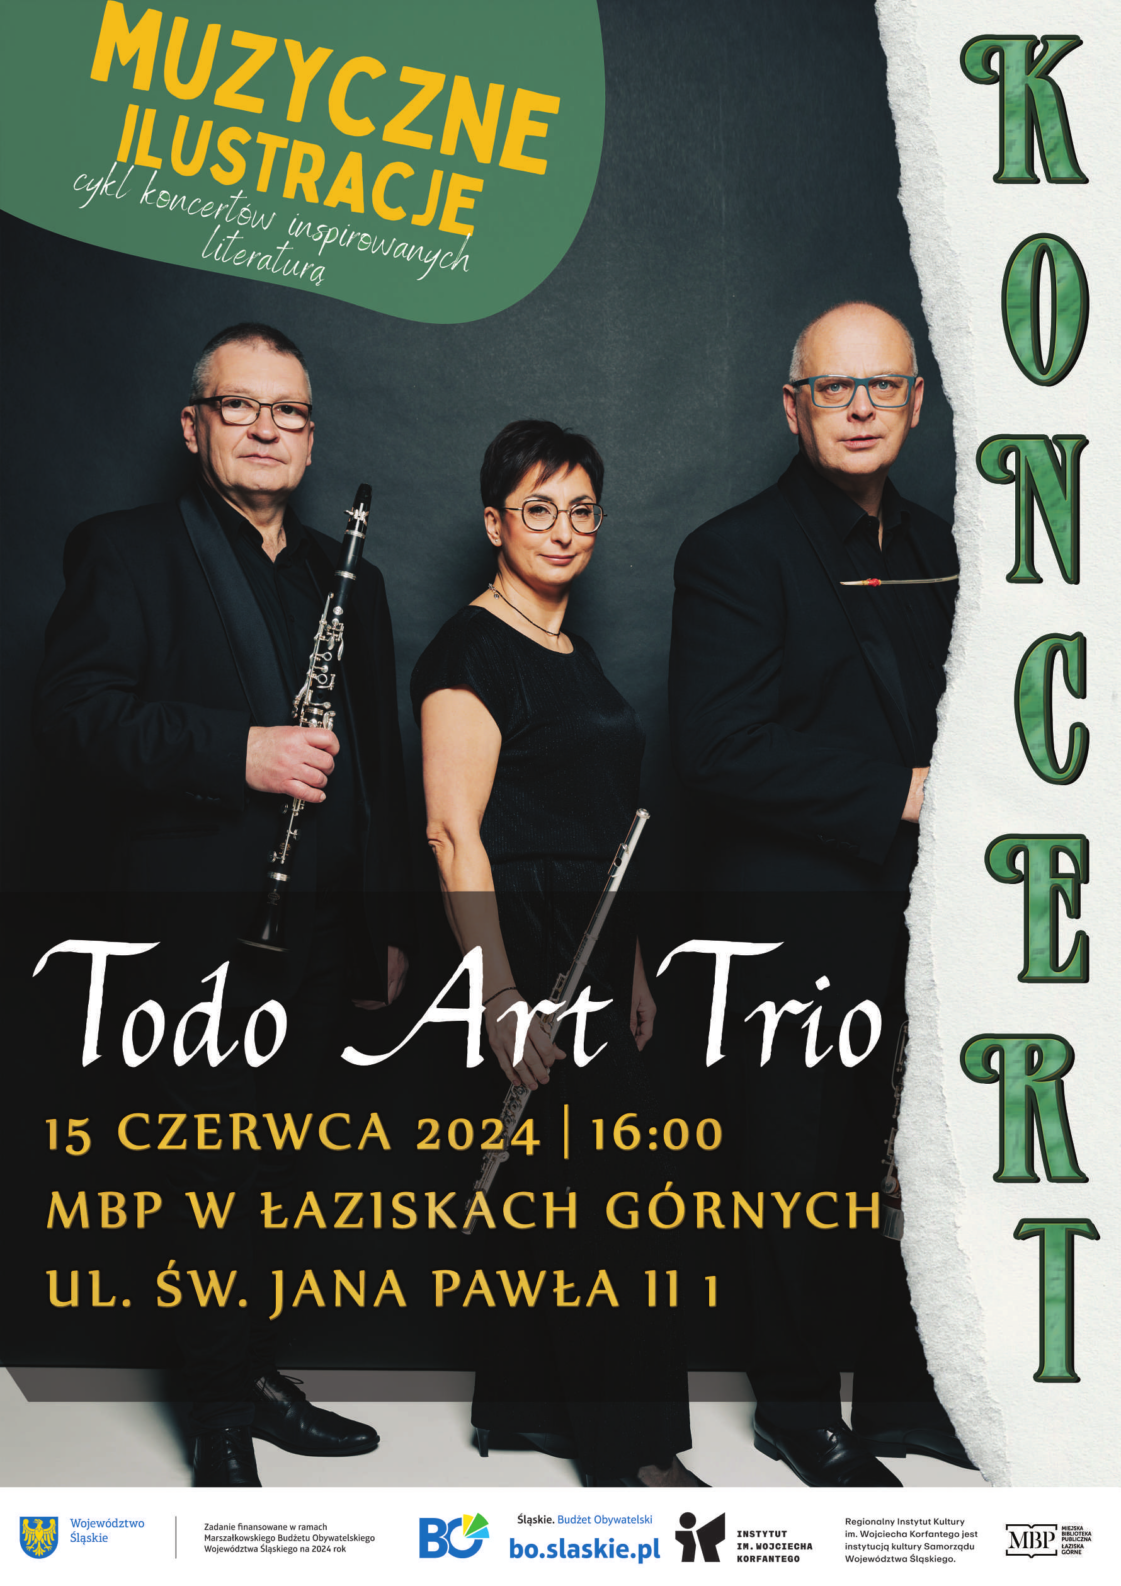 Plakat koncertu zespołu Todo Art Trio. W tle zdjęcie zespołu